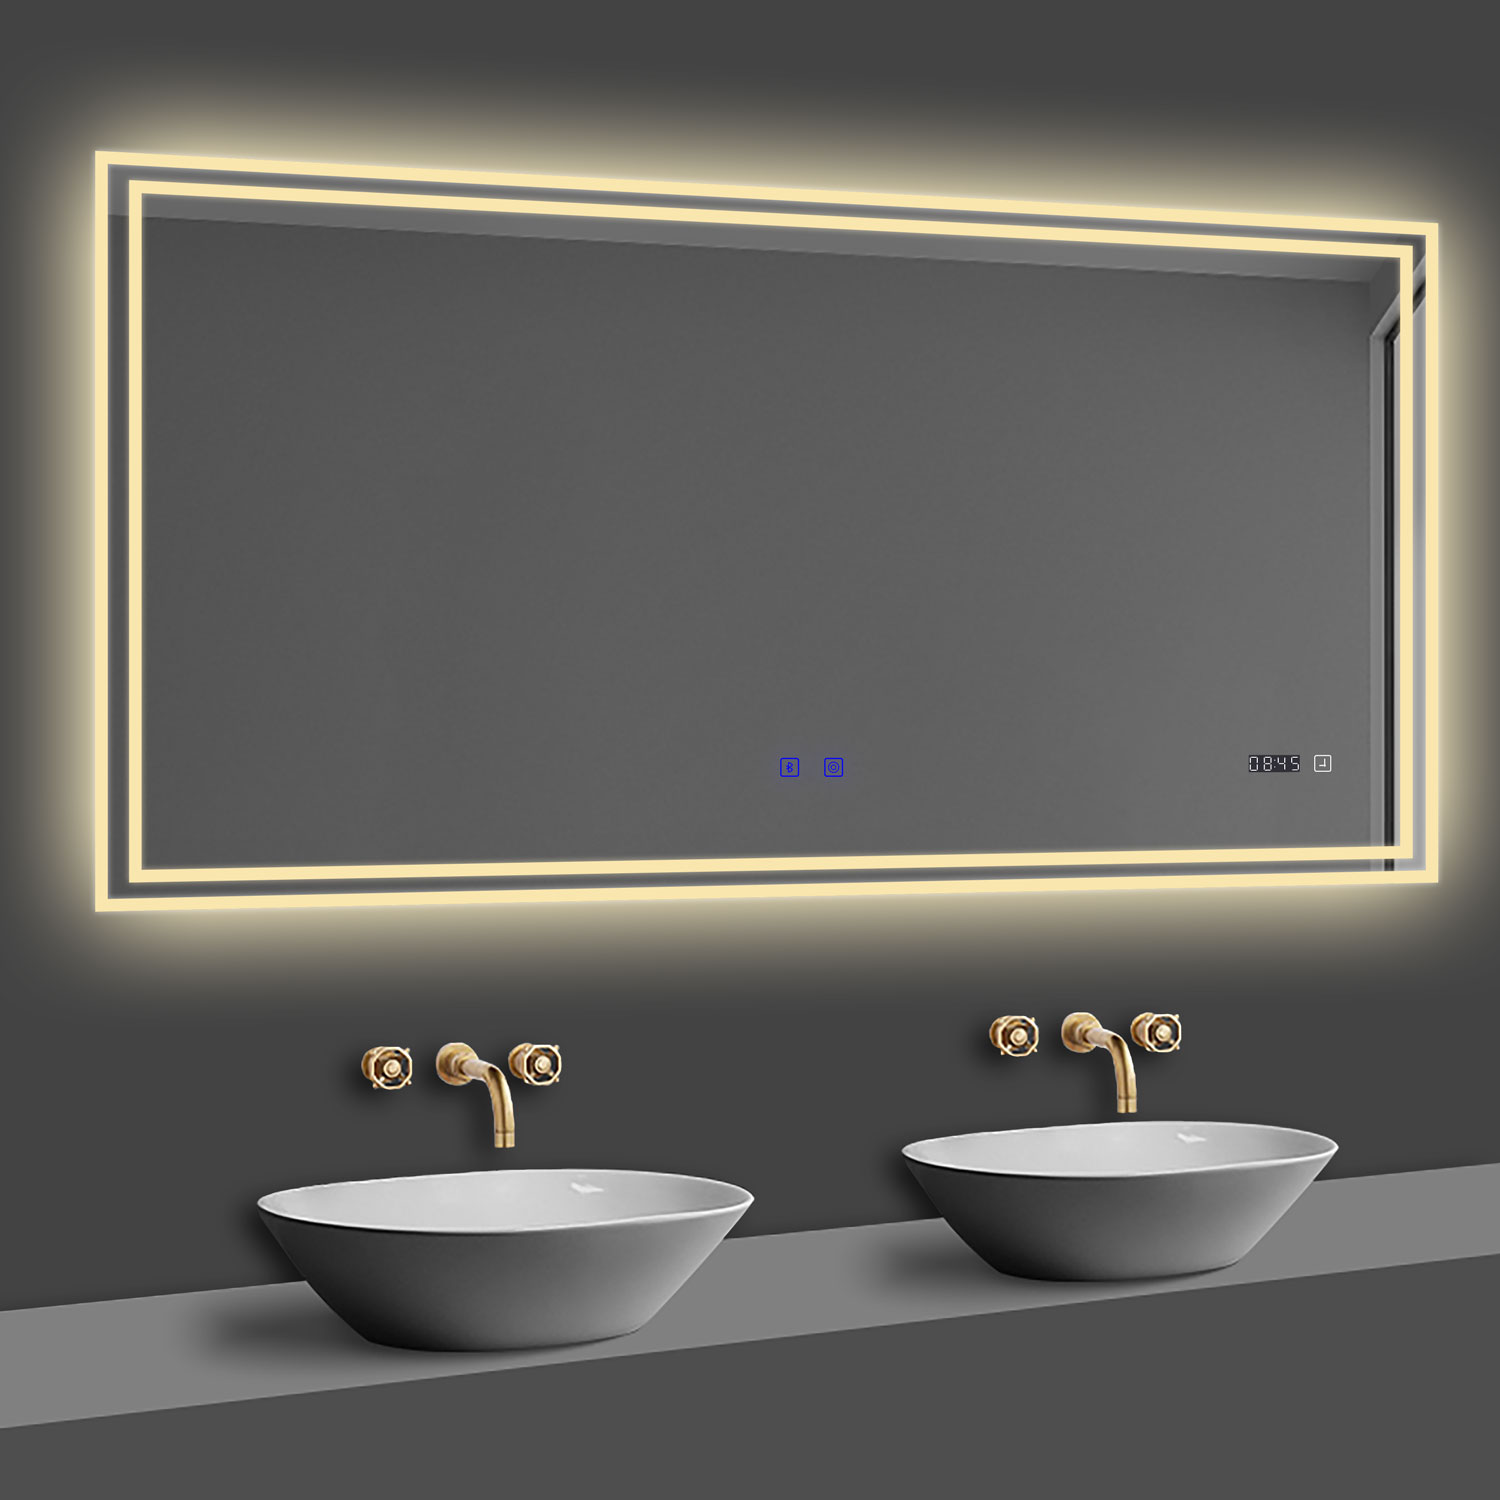 LED Badspiegel 100x60 cm Bluetooth Uhr TOUCH BESCHLAGFREI Wandspiegel Kalt/Neutral/Warmweiß ,Dimmbar